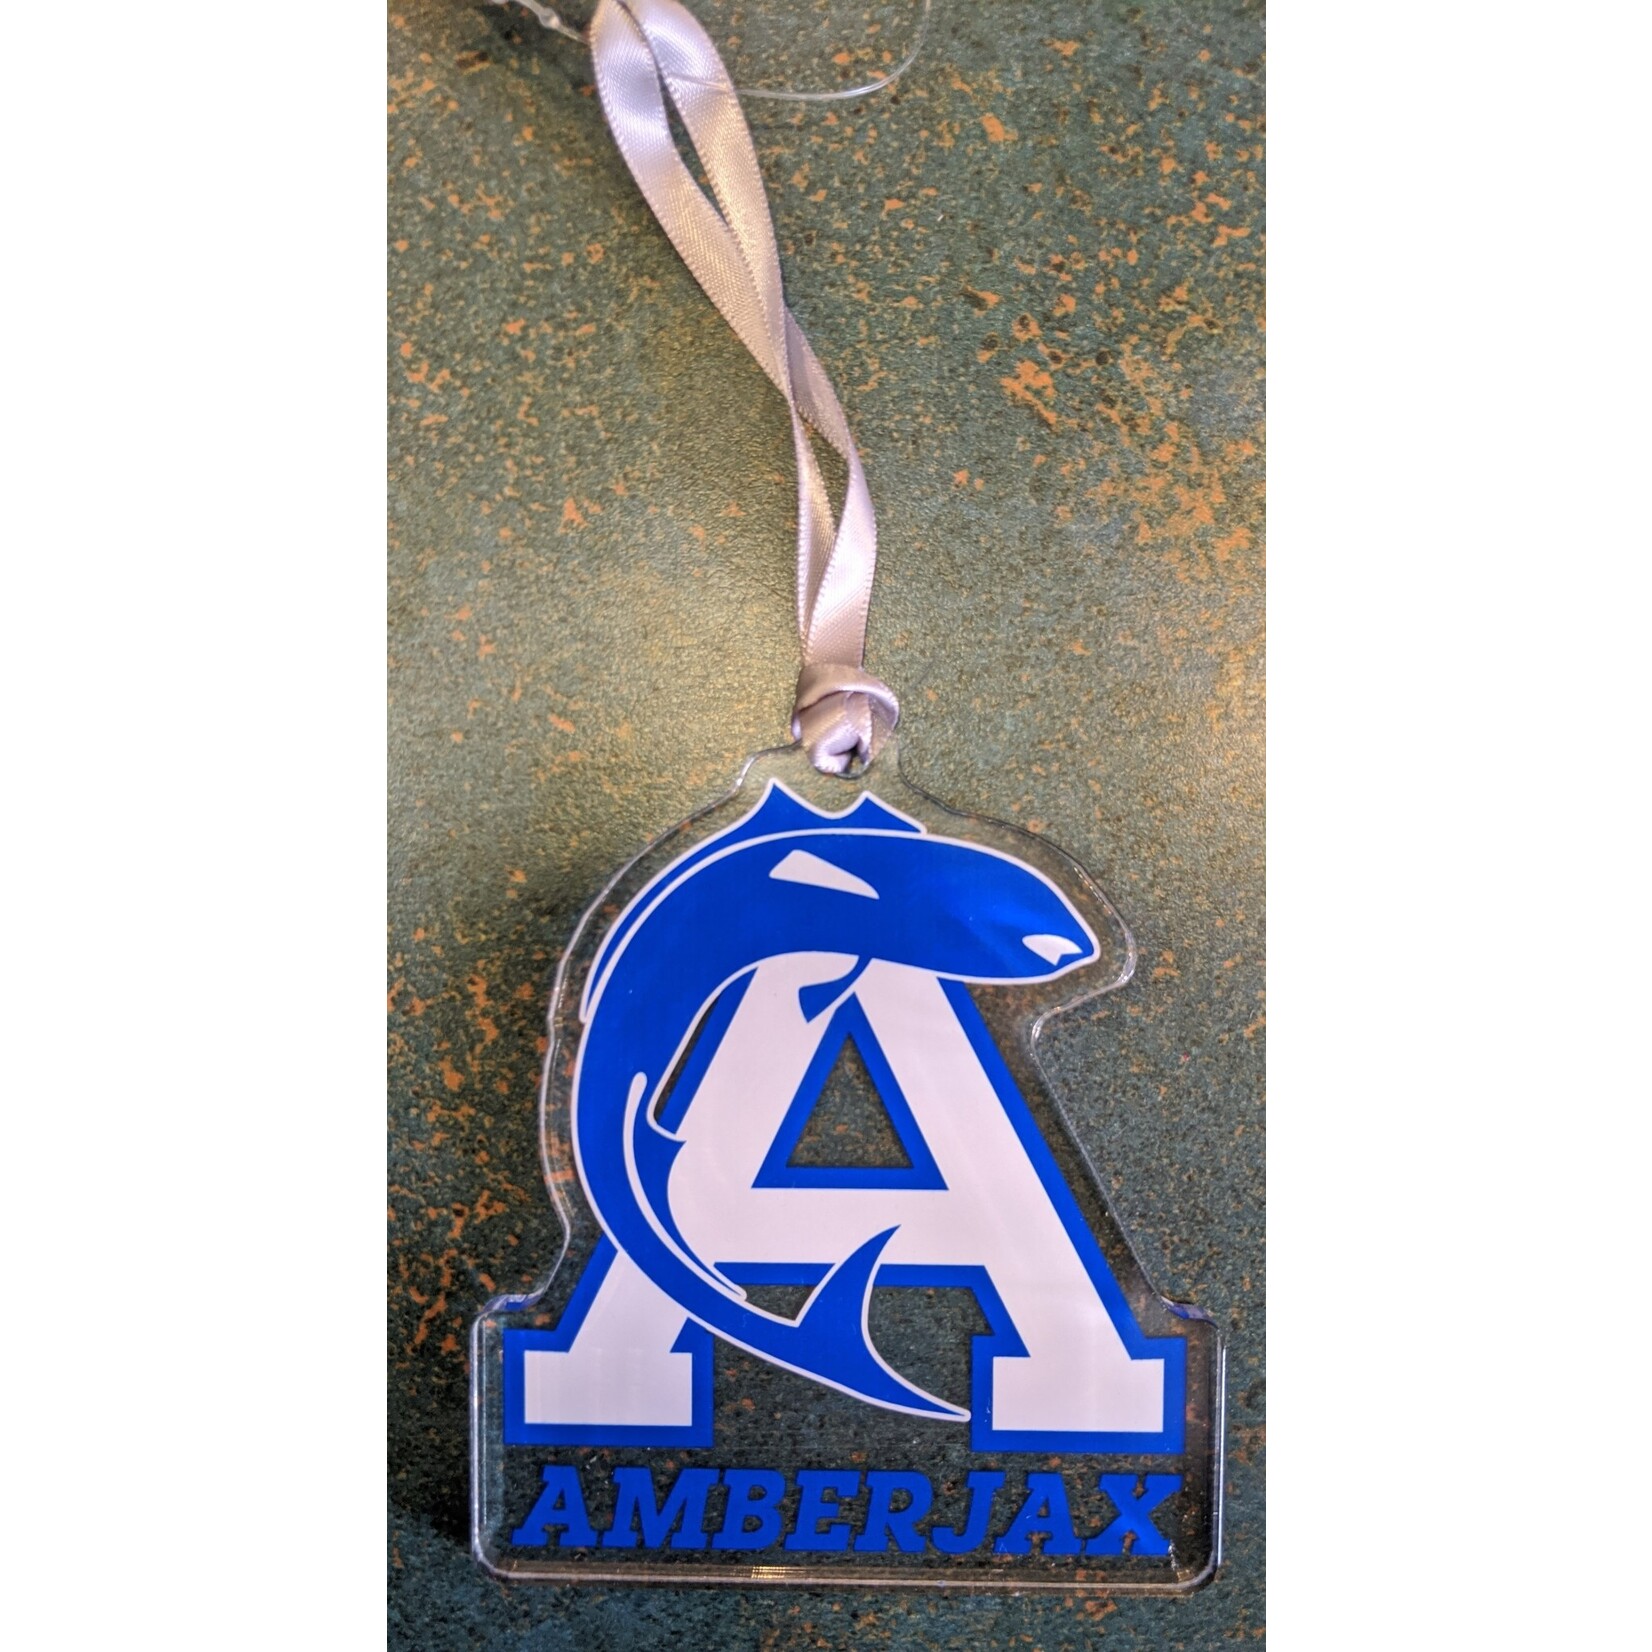 Amberjax Amberjax Holiday Ornament